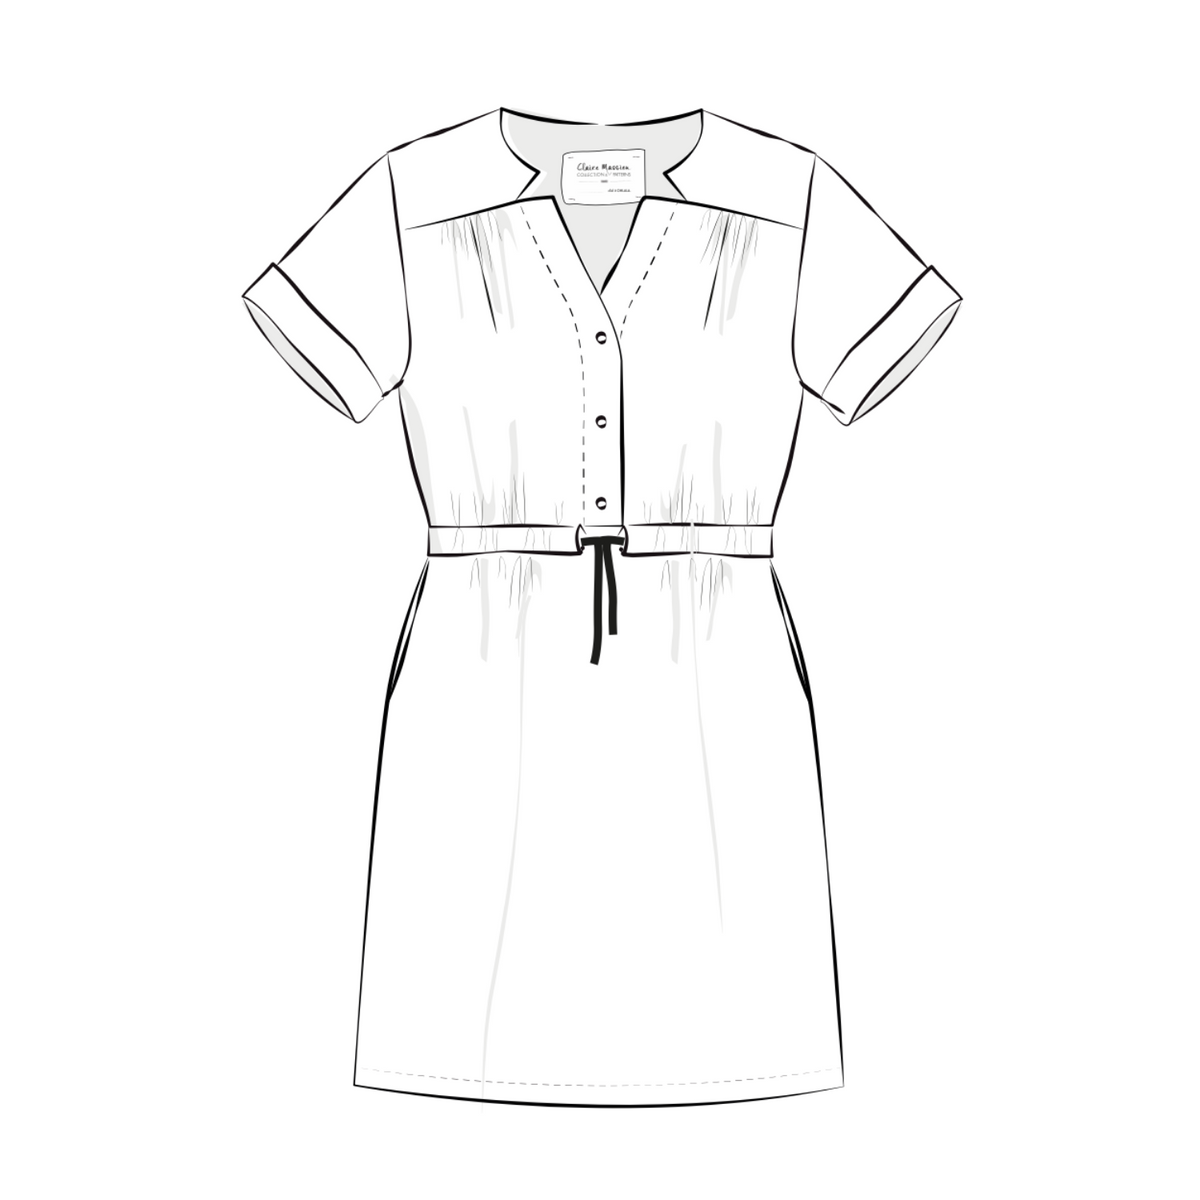 Schnittmuster Kleid/Bluse Emma: Kleid mit kurzen Ärmeln, mit geradem Saum, vorne und hinten gleich lang